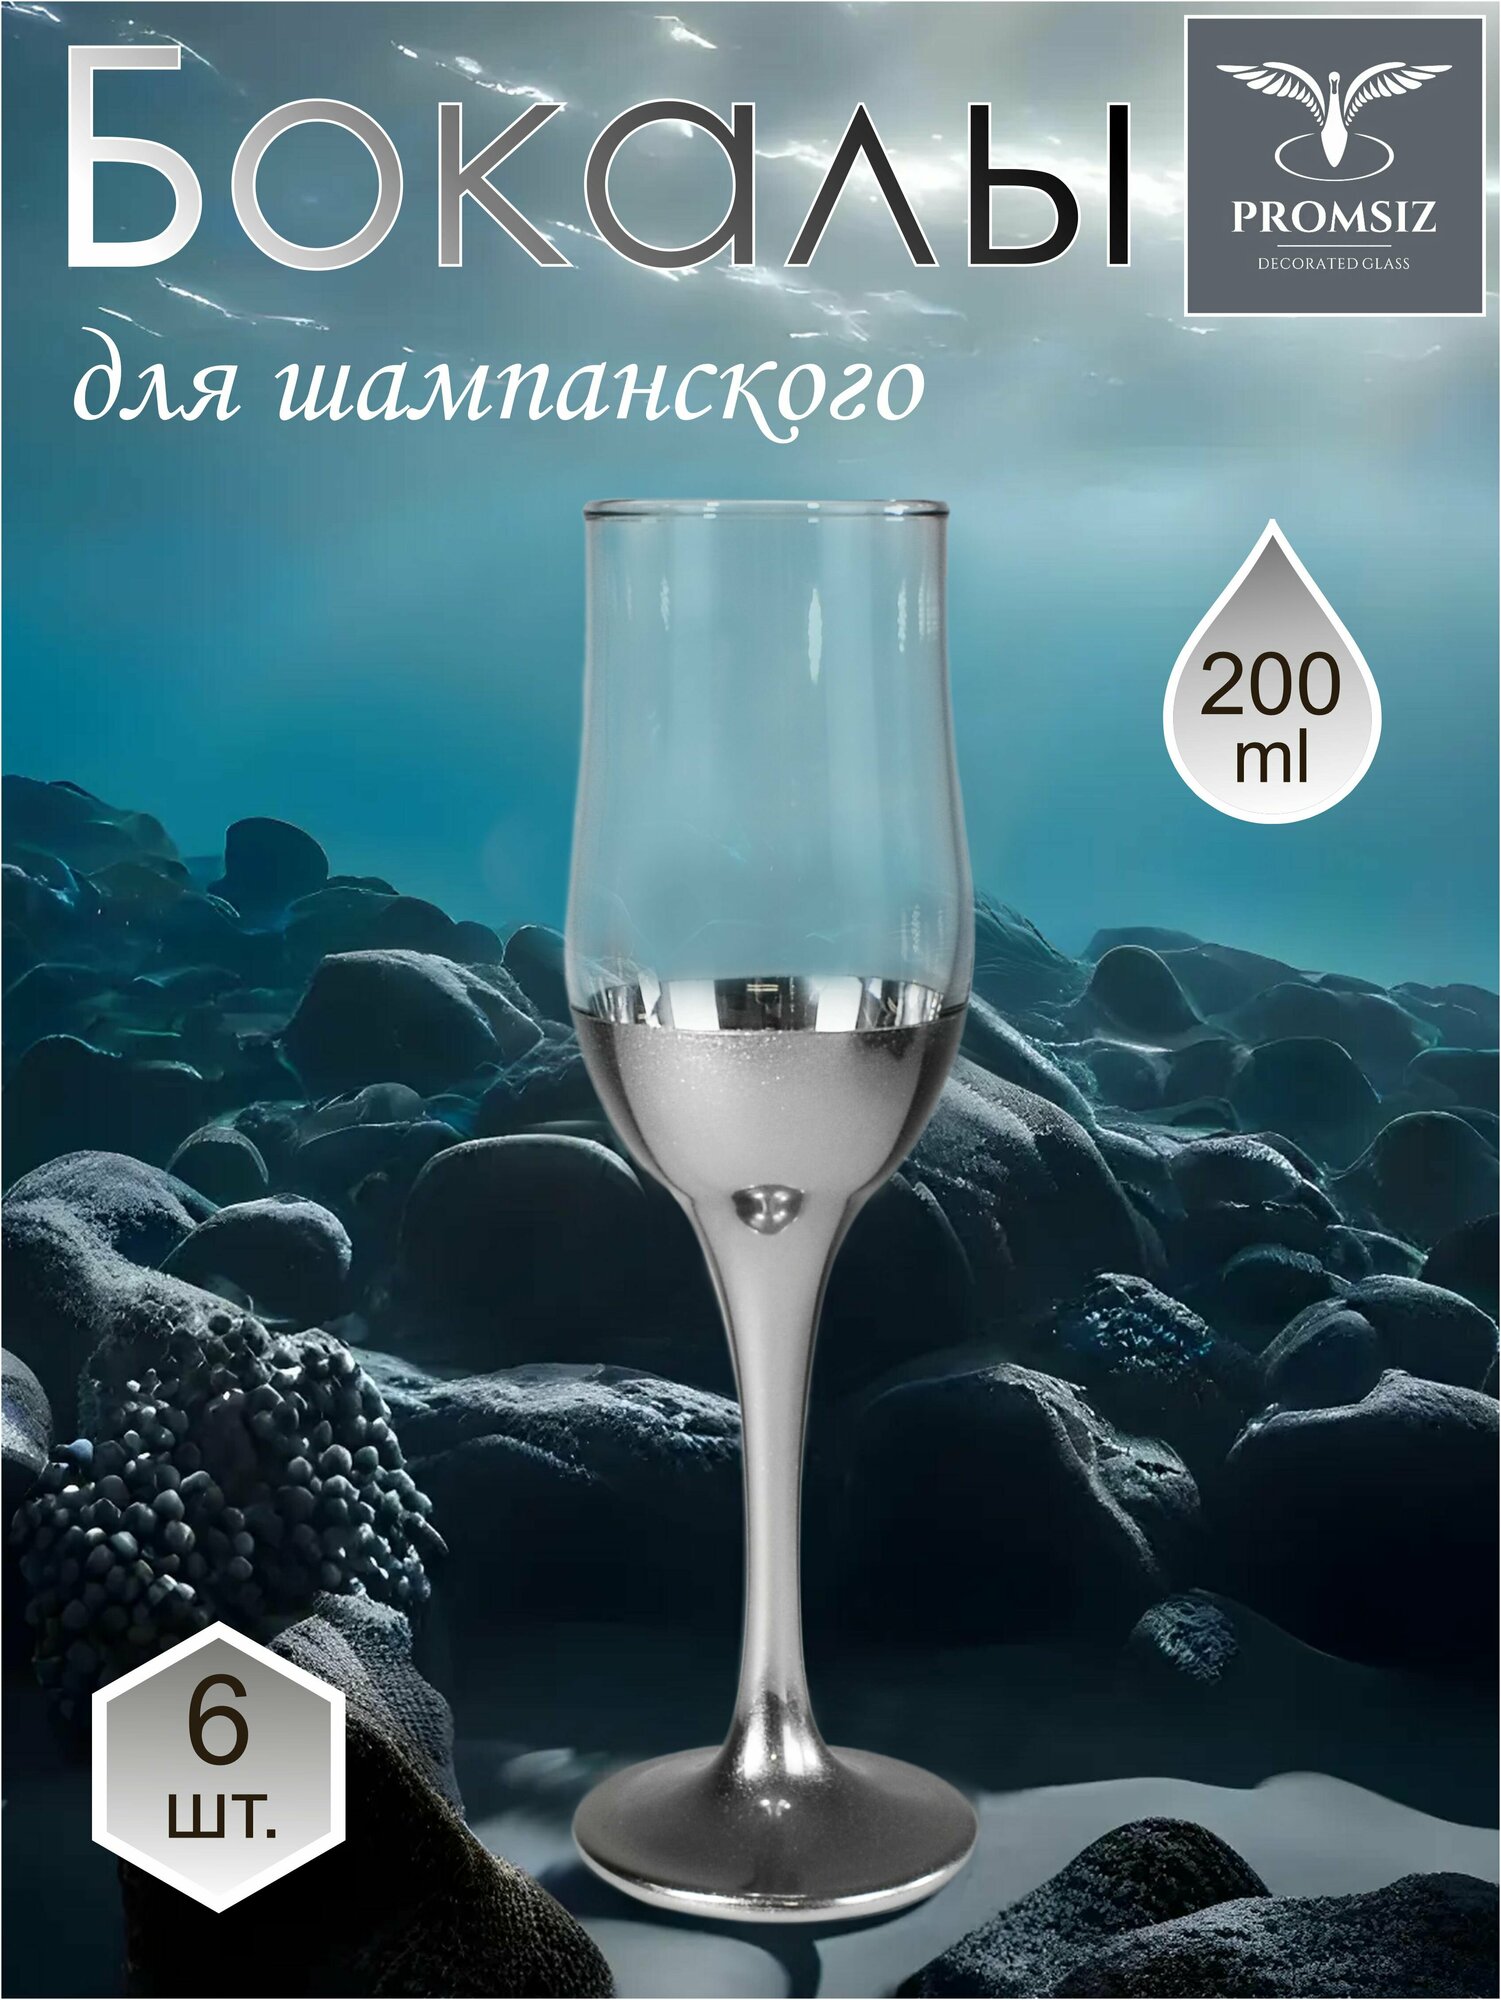 Подарочный набор бокалов / фужеров для шампанского с алмазной гравировкой PROMSIZ поло серебро 200 мл 6 шт.